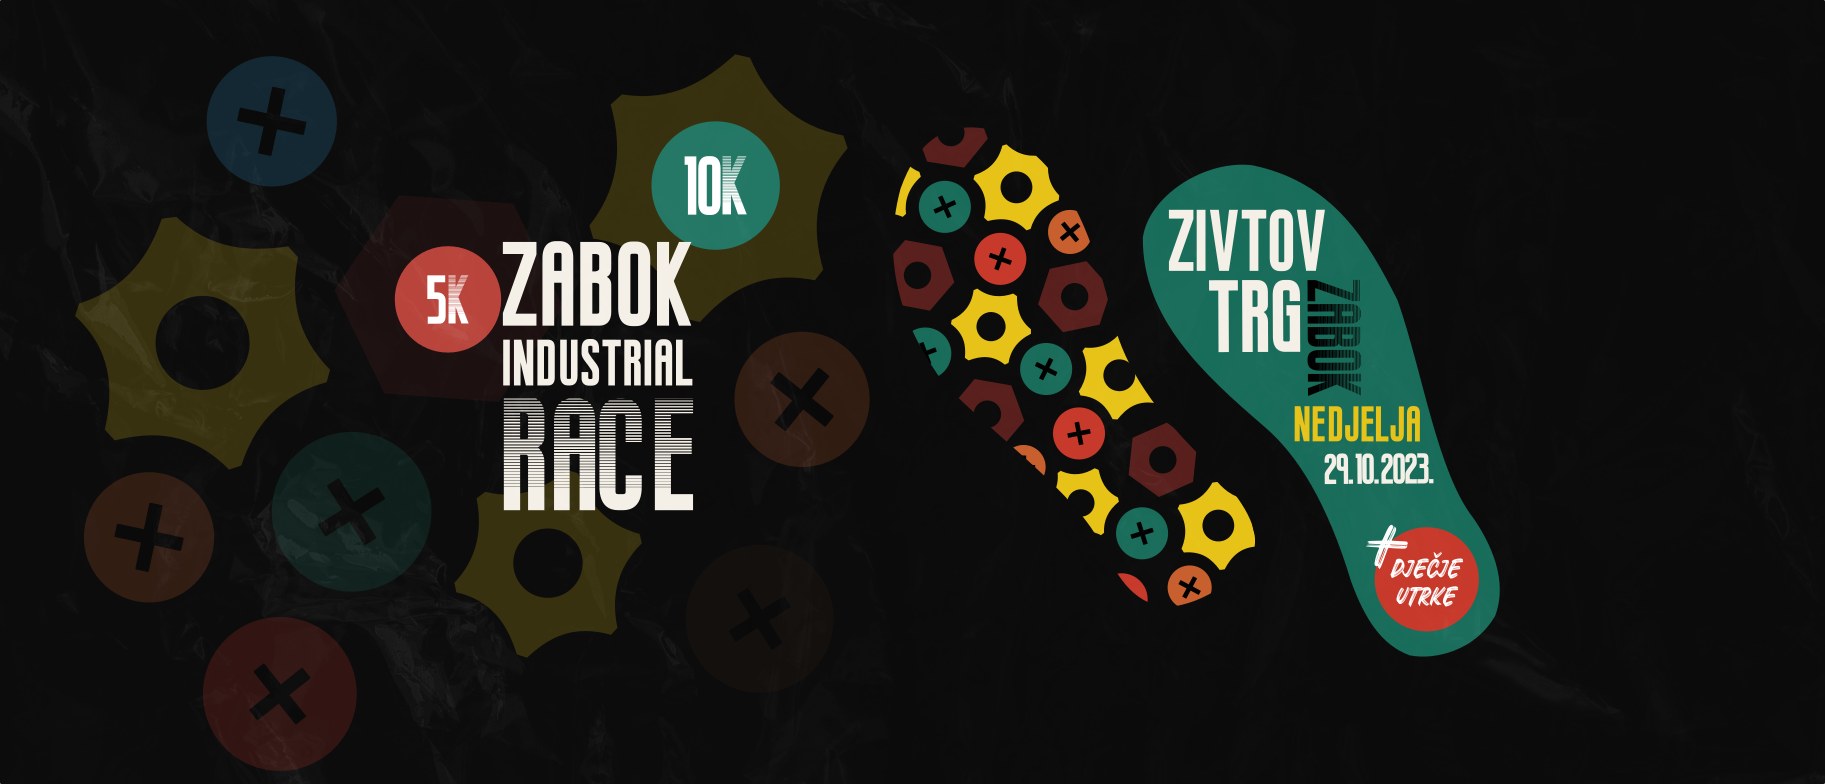 Zabok Industrial Race 2023.